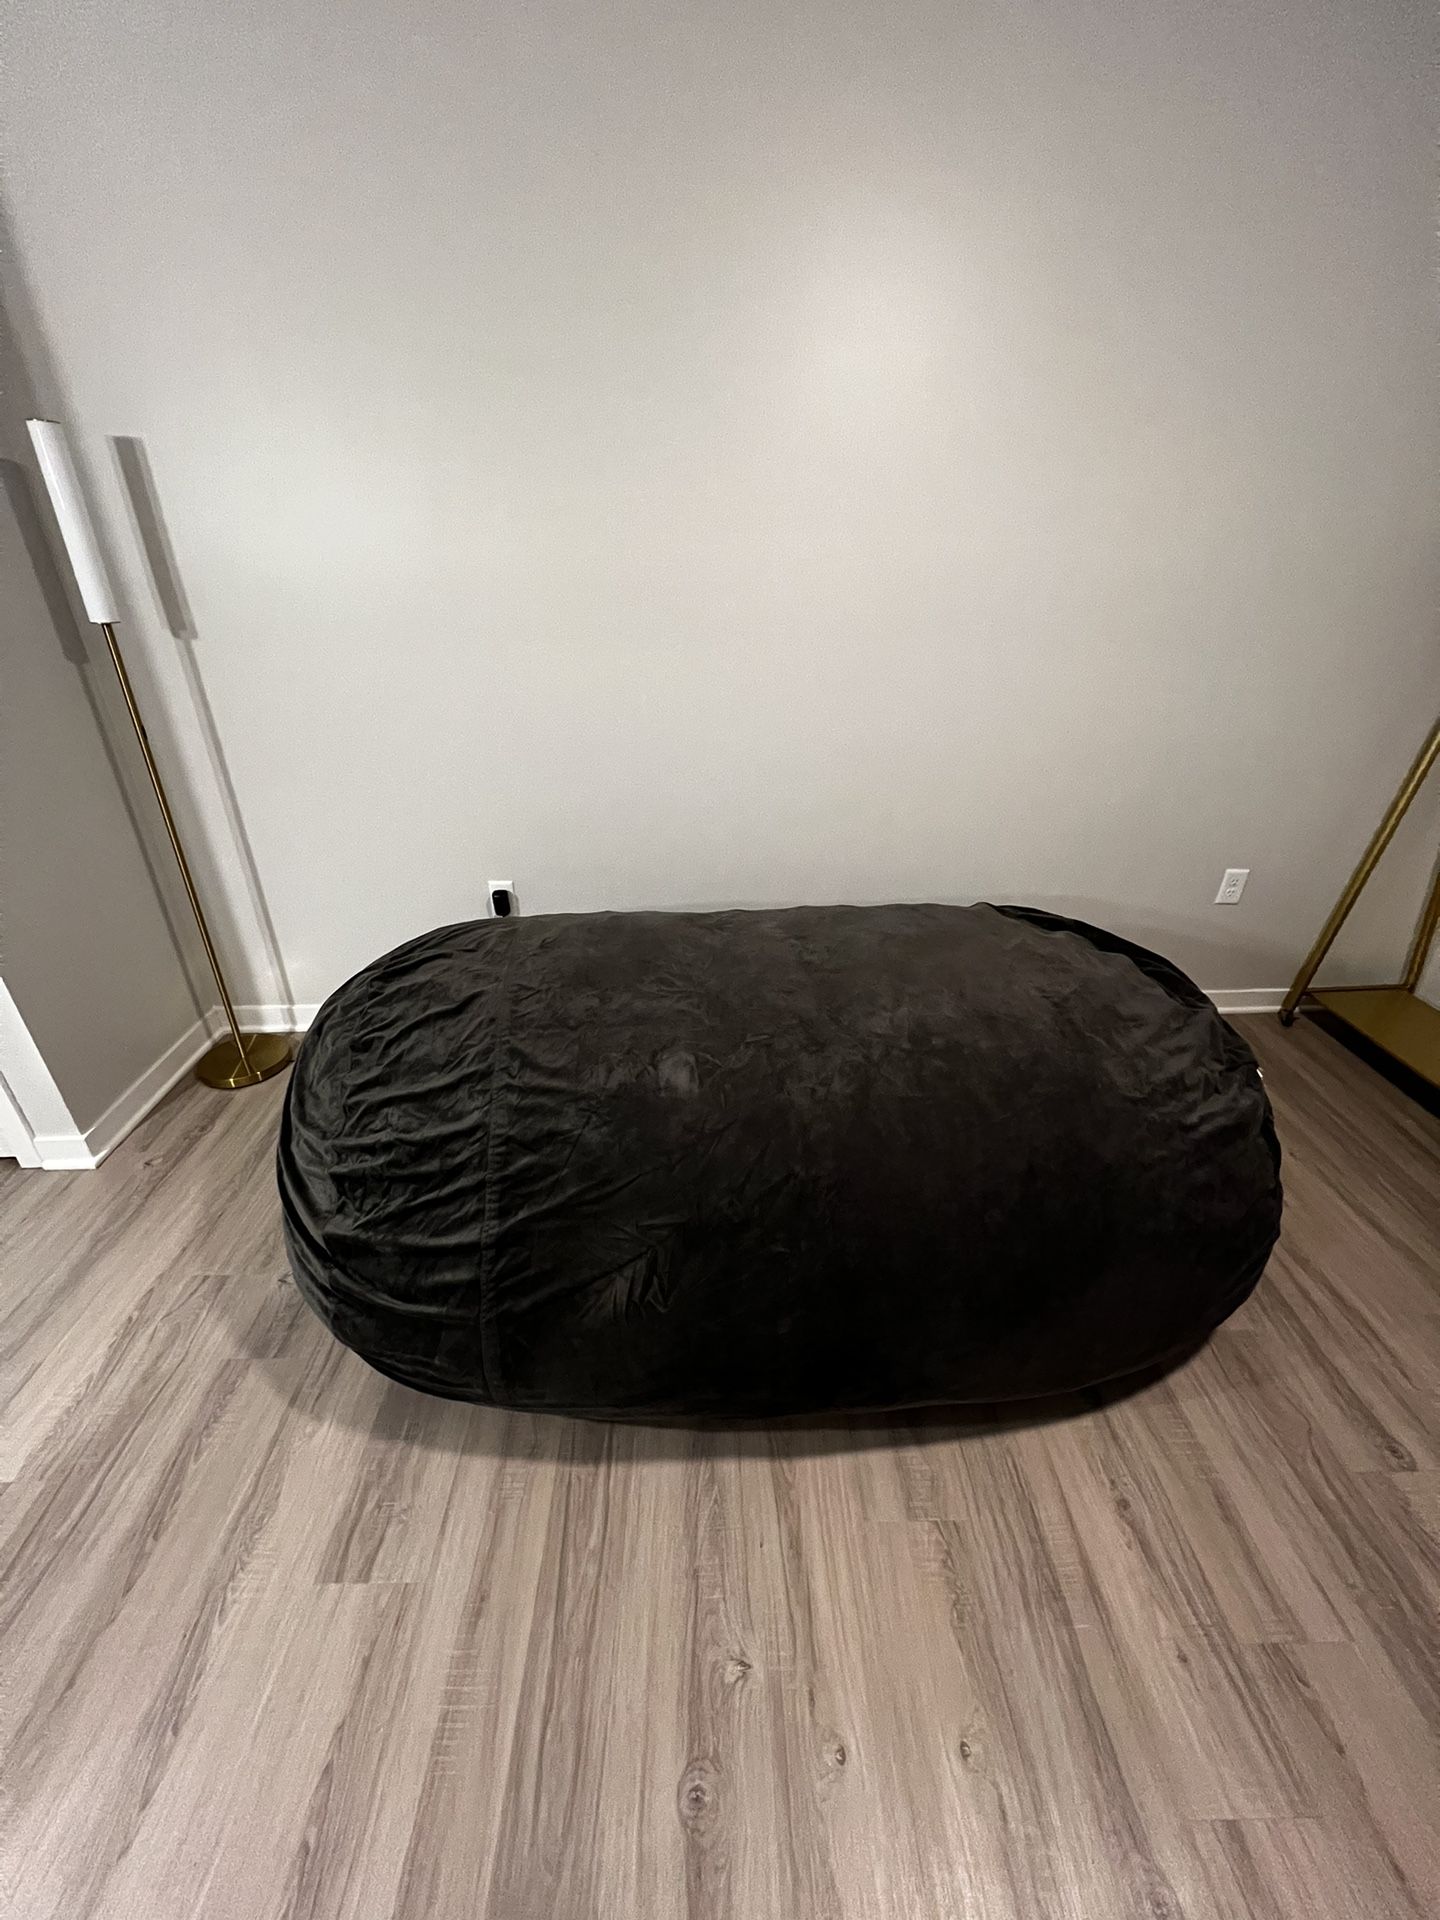 7.5 ft memory foam bean bag chair